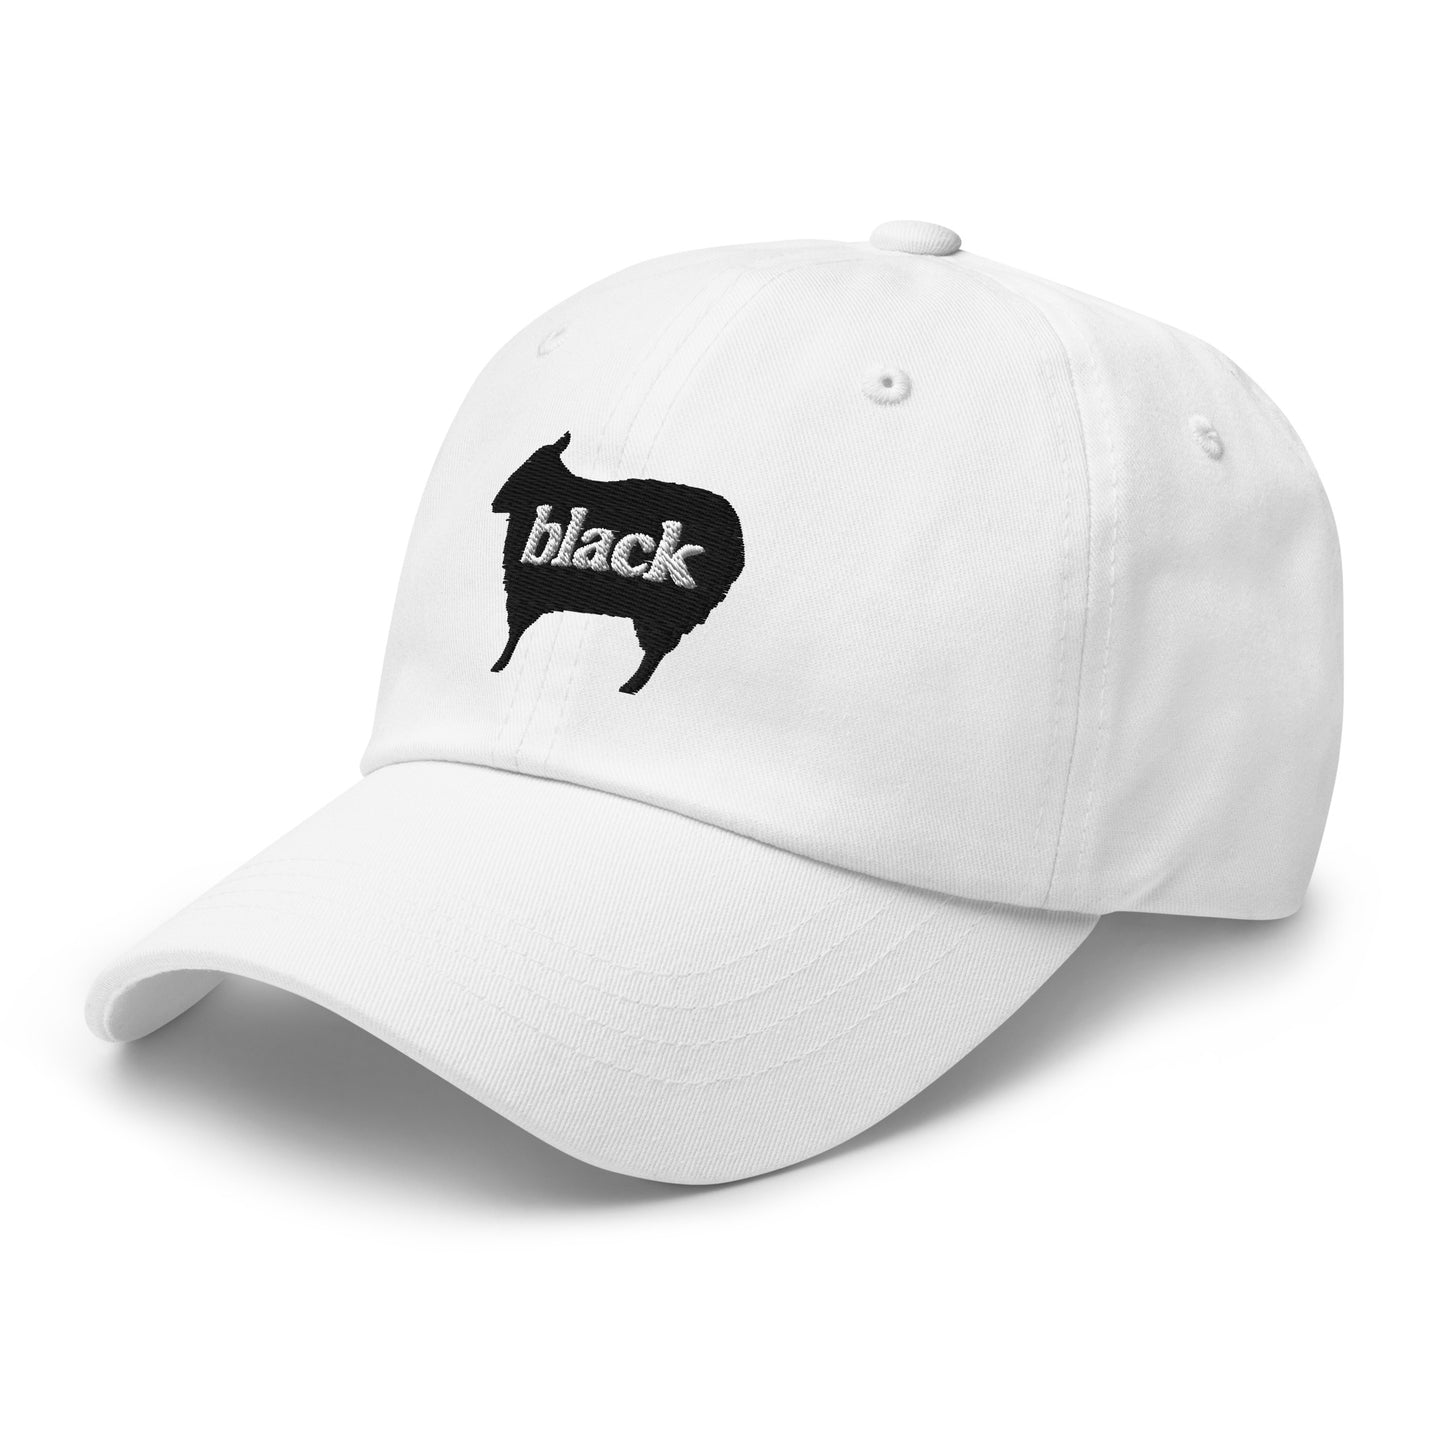 Black Sheep - Dad hat